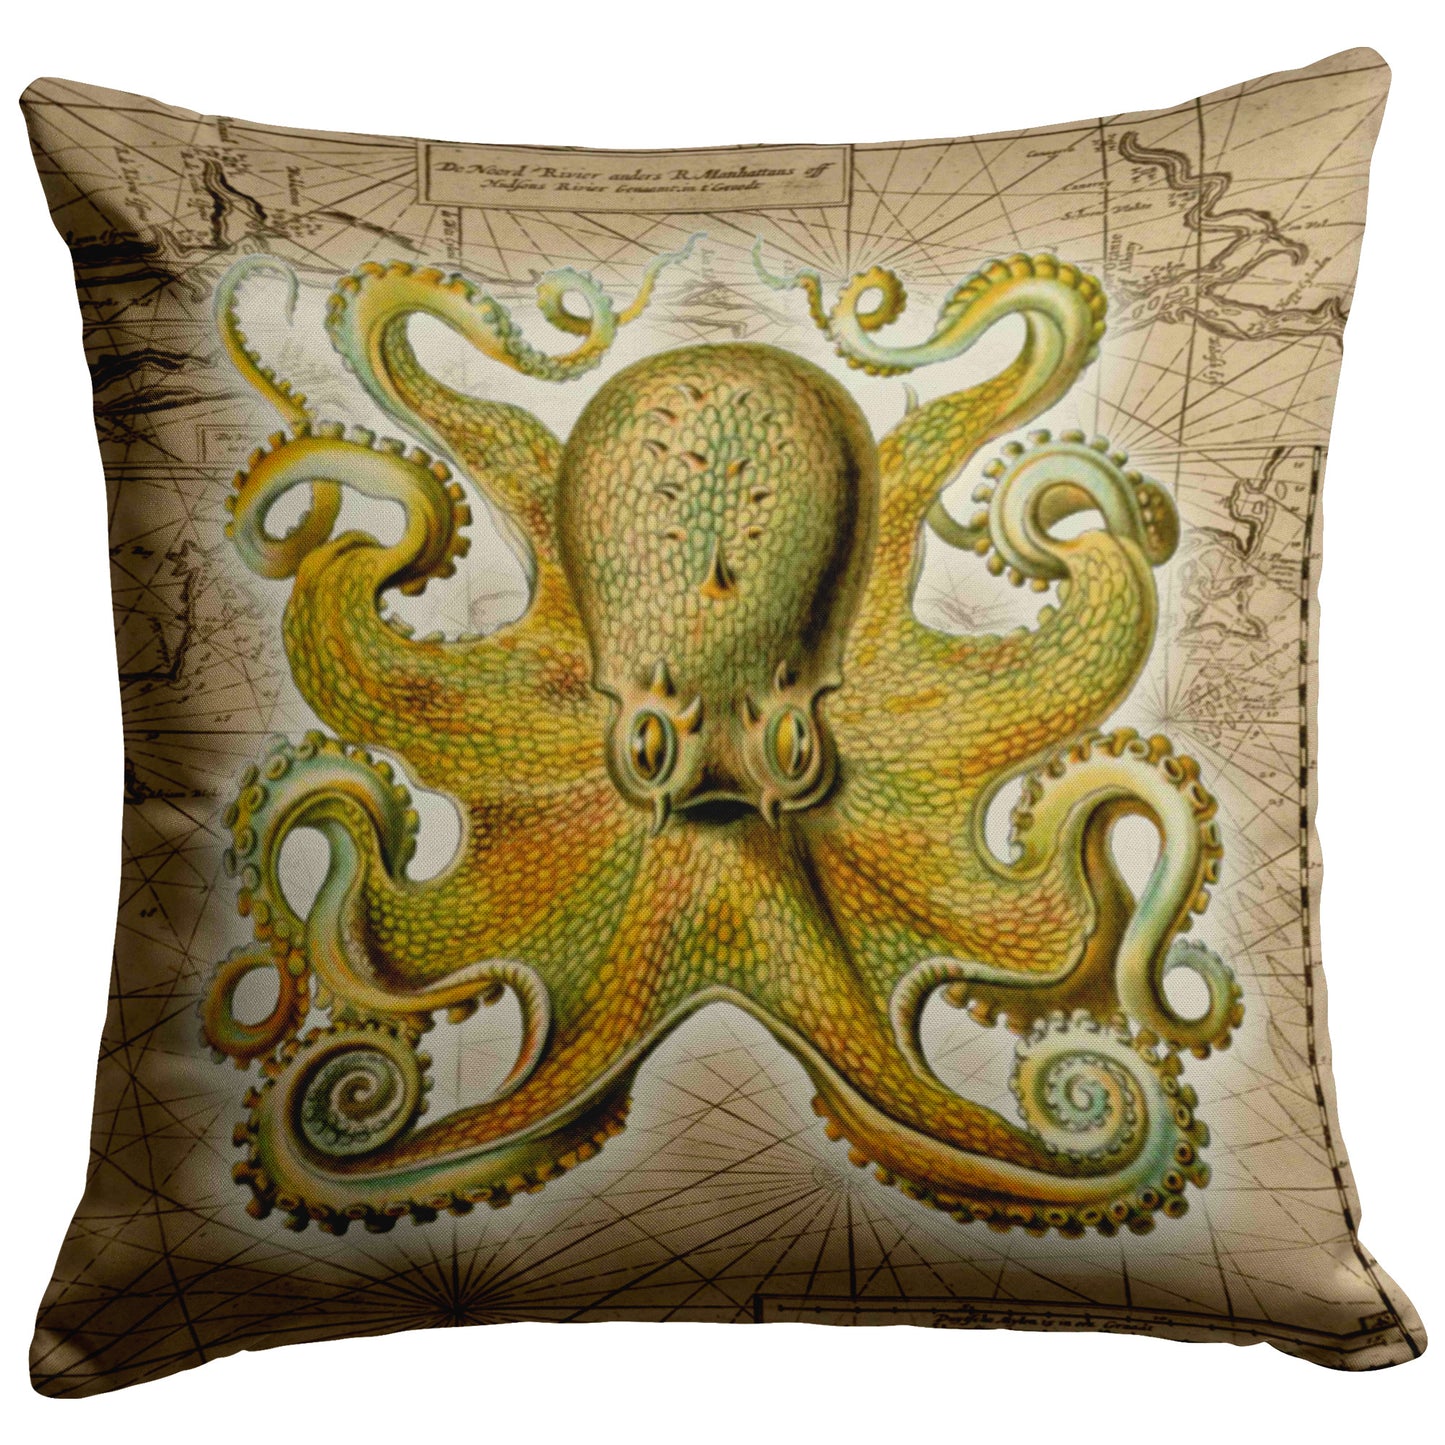 Vintage Nautical Throw Pillow - Octopus